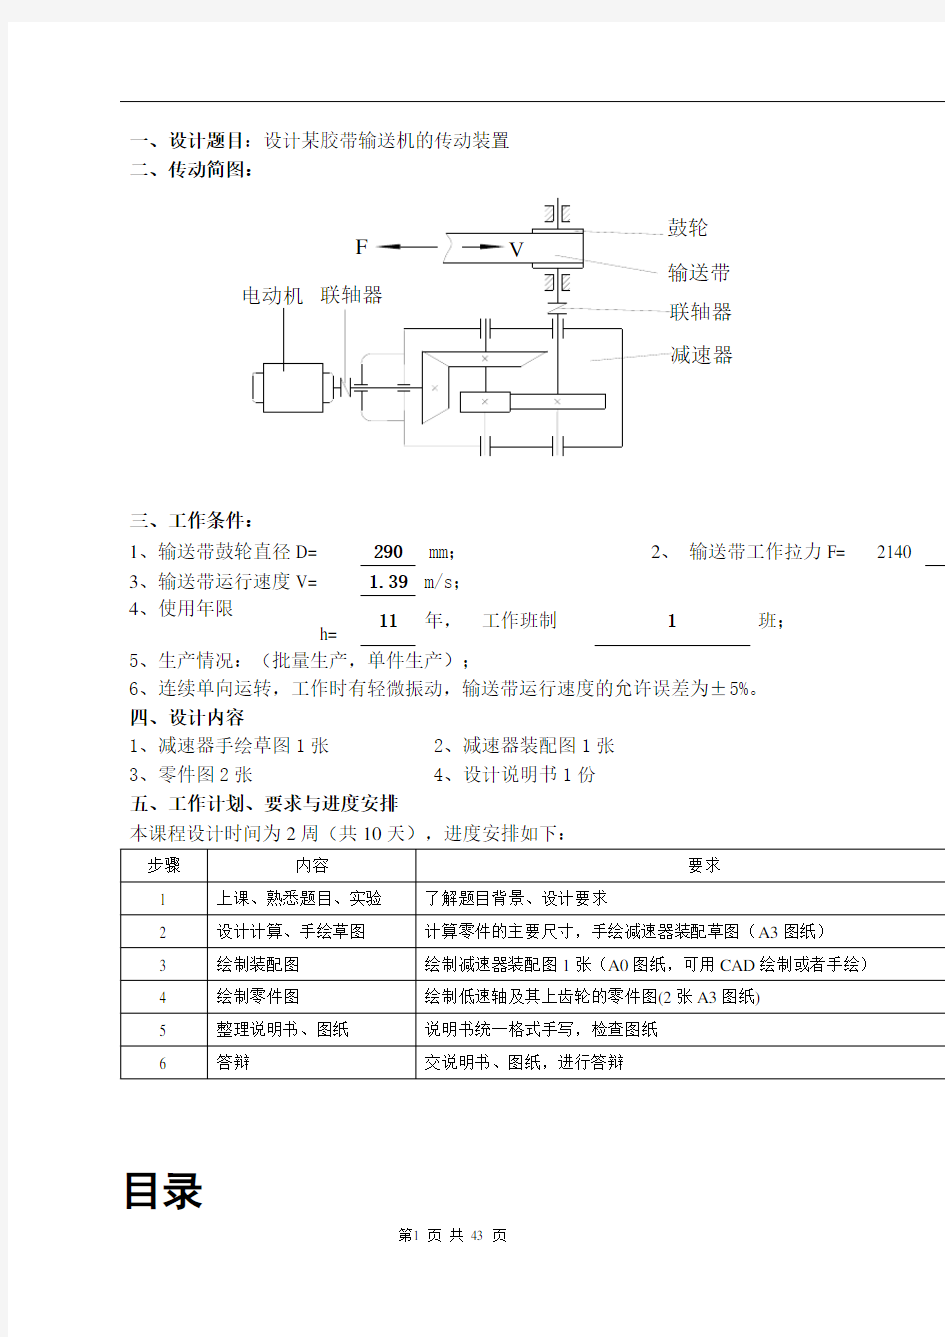 圆锥圆柱齿轮二级减速器(CAD装配图和零件图)